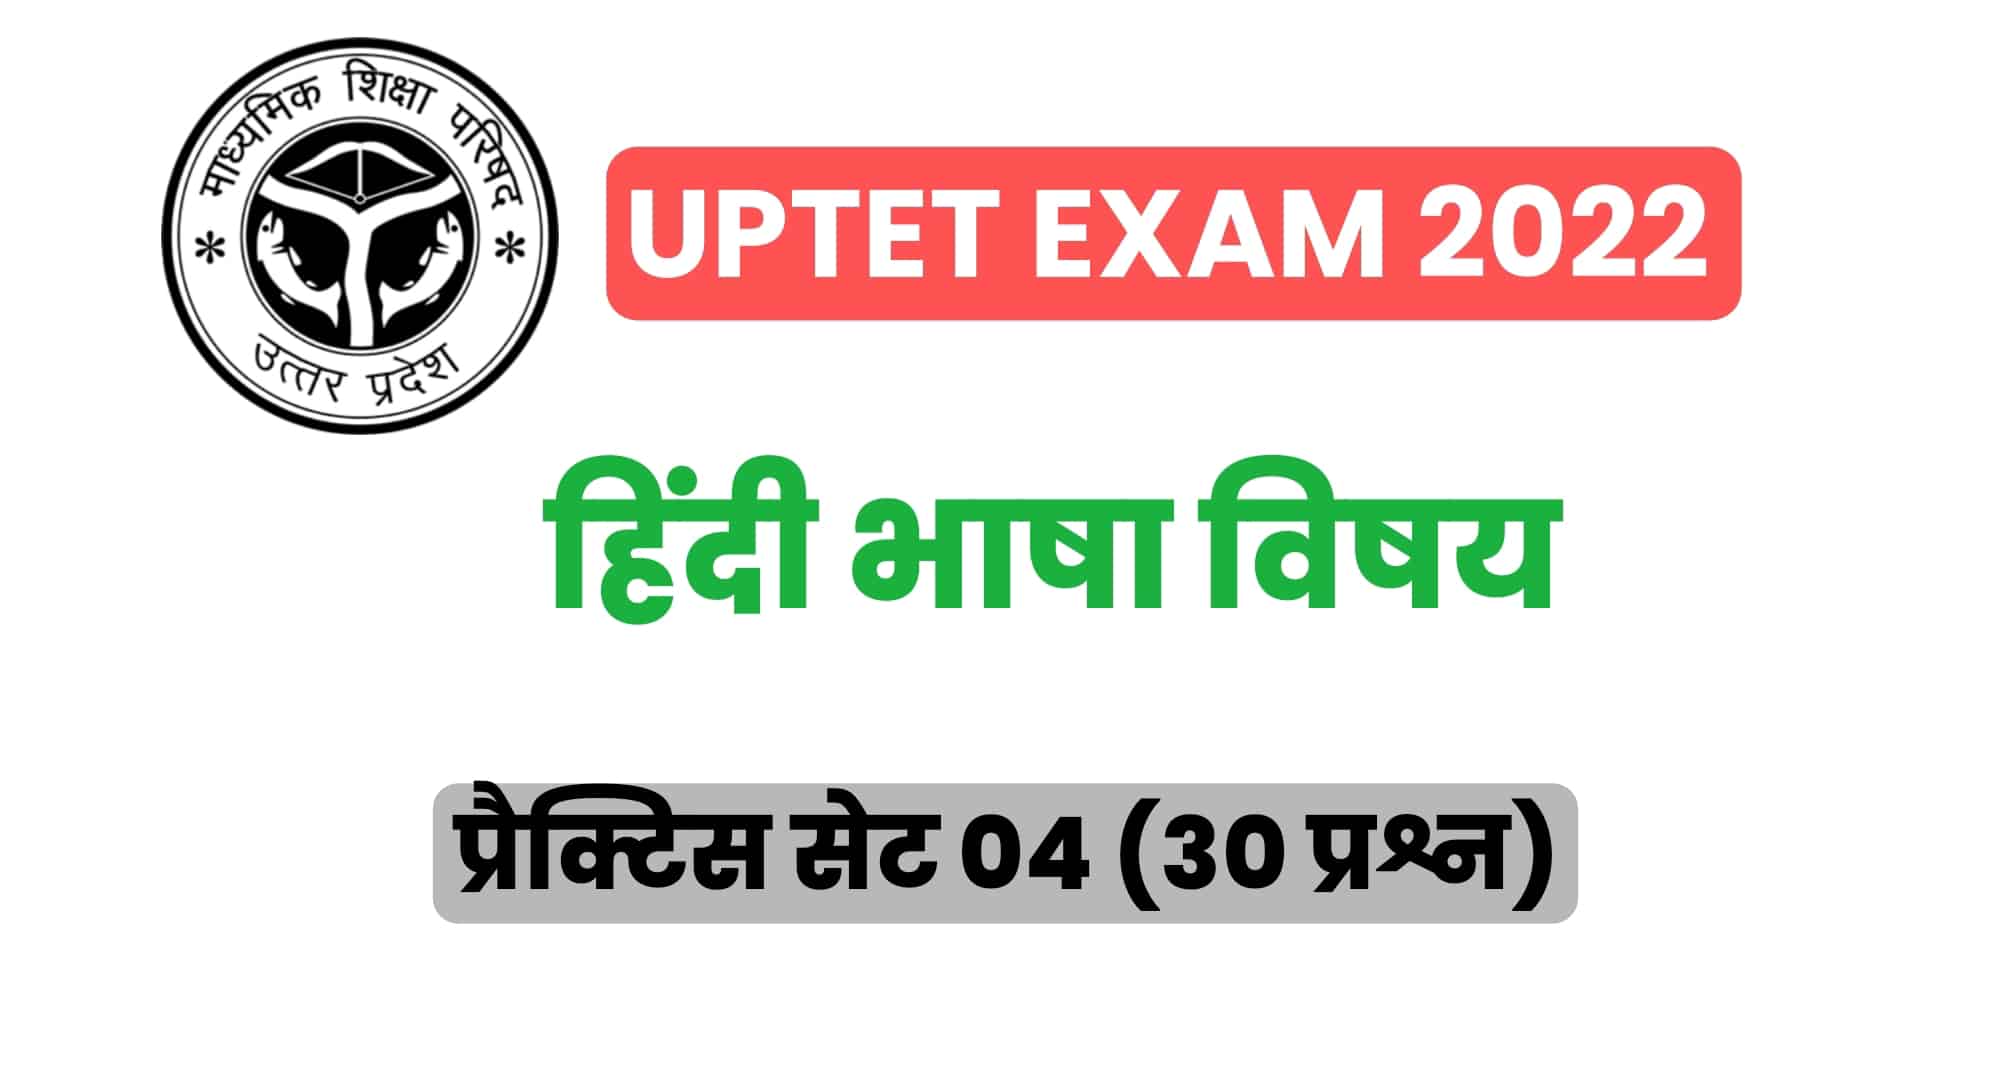 UPTET हिंदी विषय प्रैक्टिस सेट 04 : UPTET की परीक्षा में कई बार पूछे गए इन प्रश्नों को जरूर पढ़ें